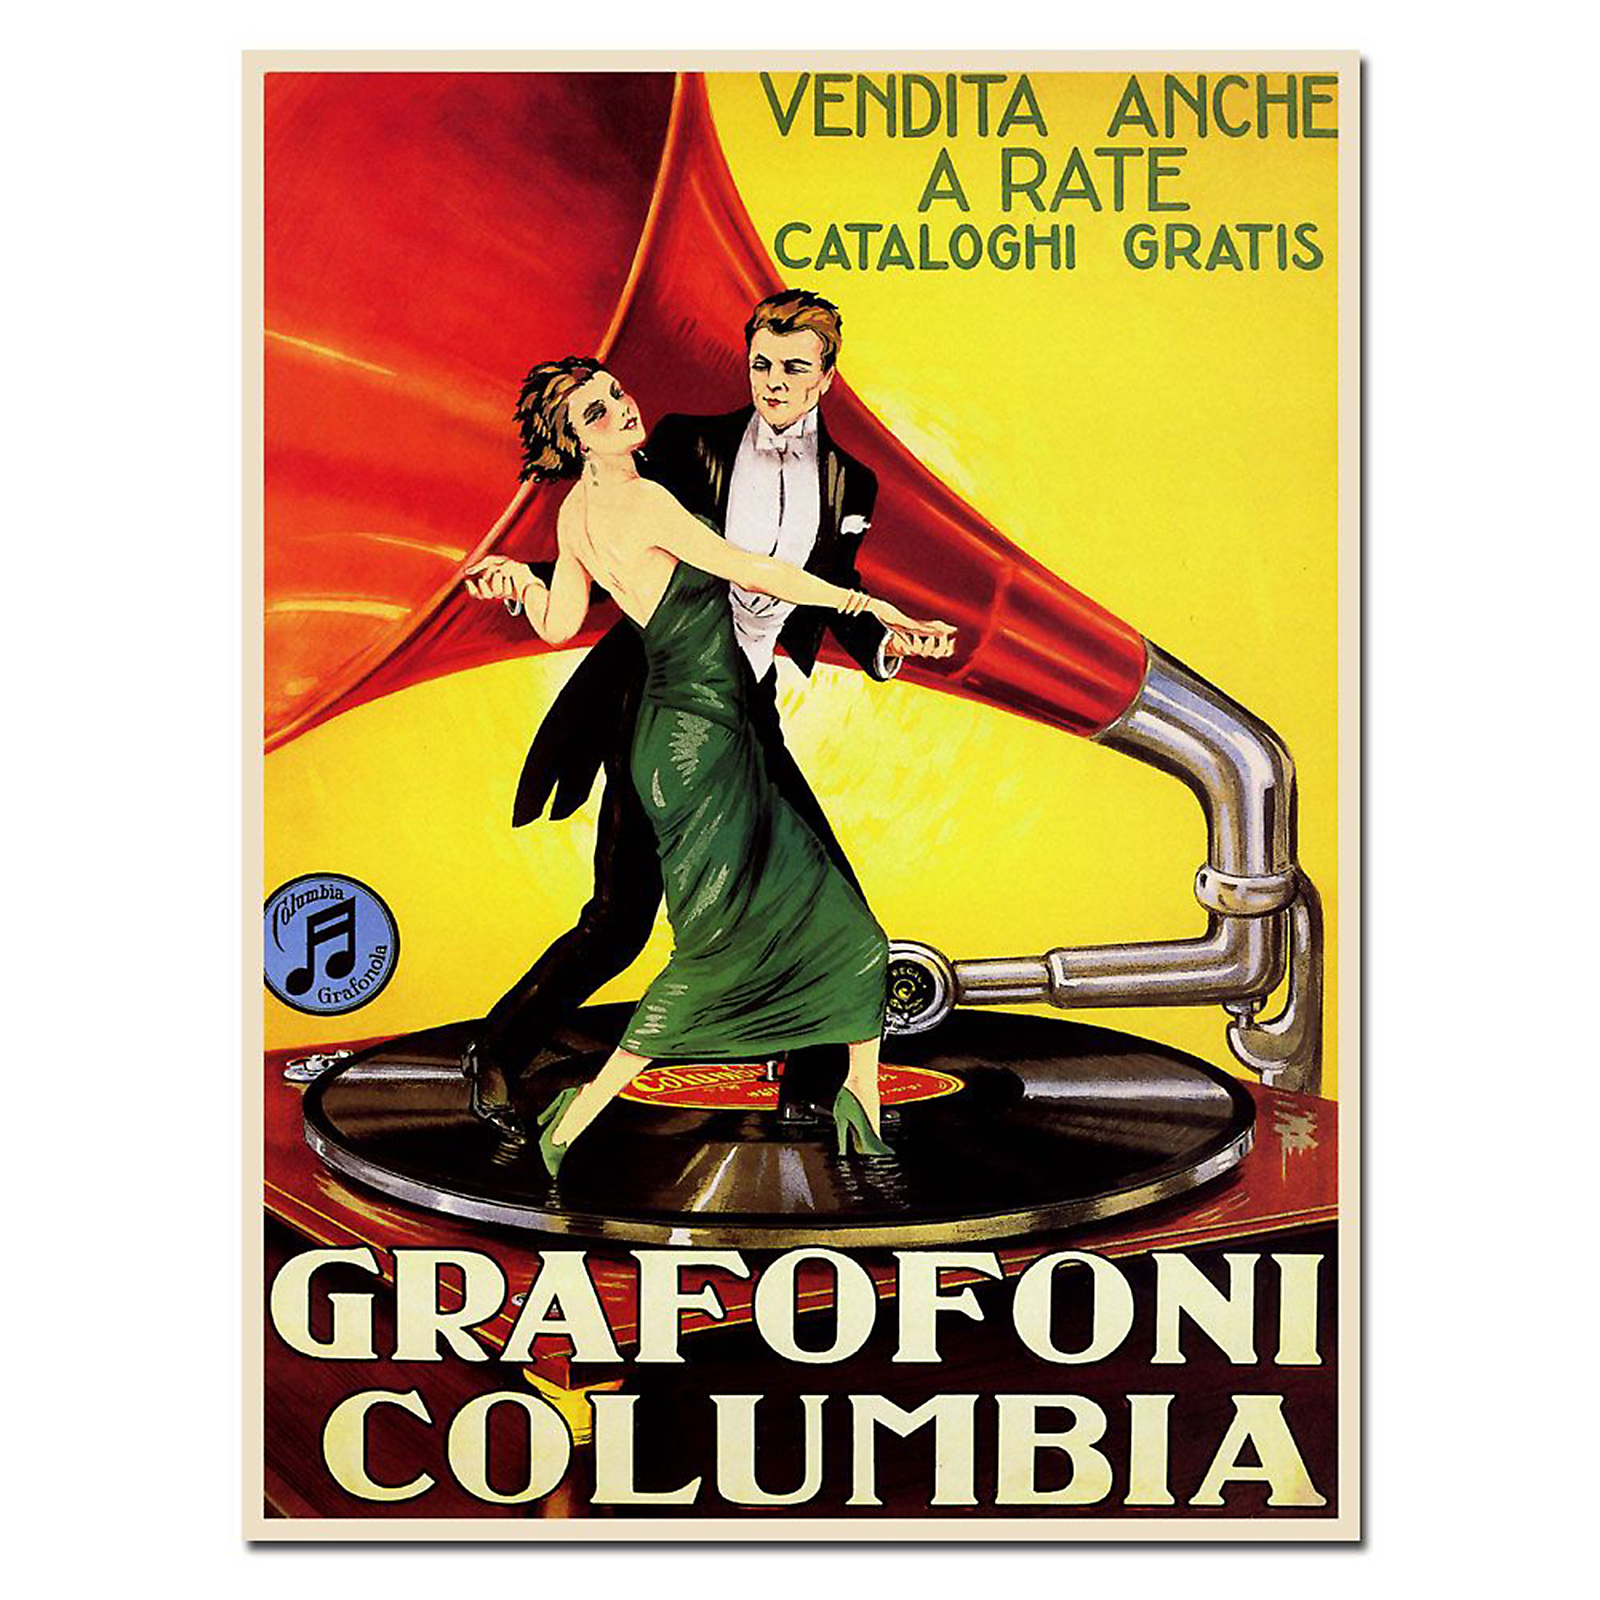 Trademark Global 14x19 inches "Grafafoni Columbia"